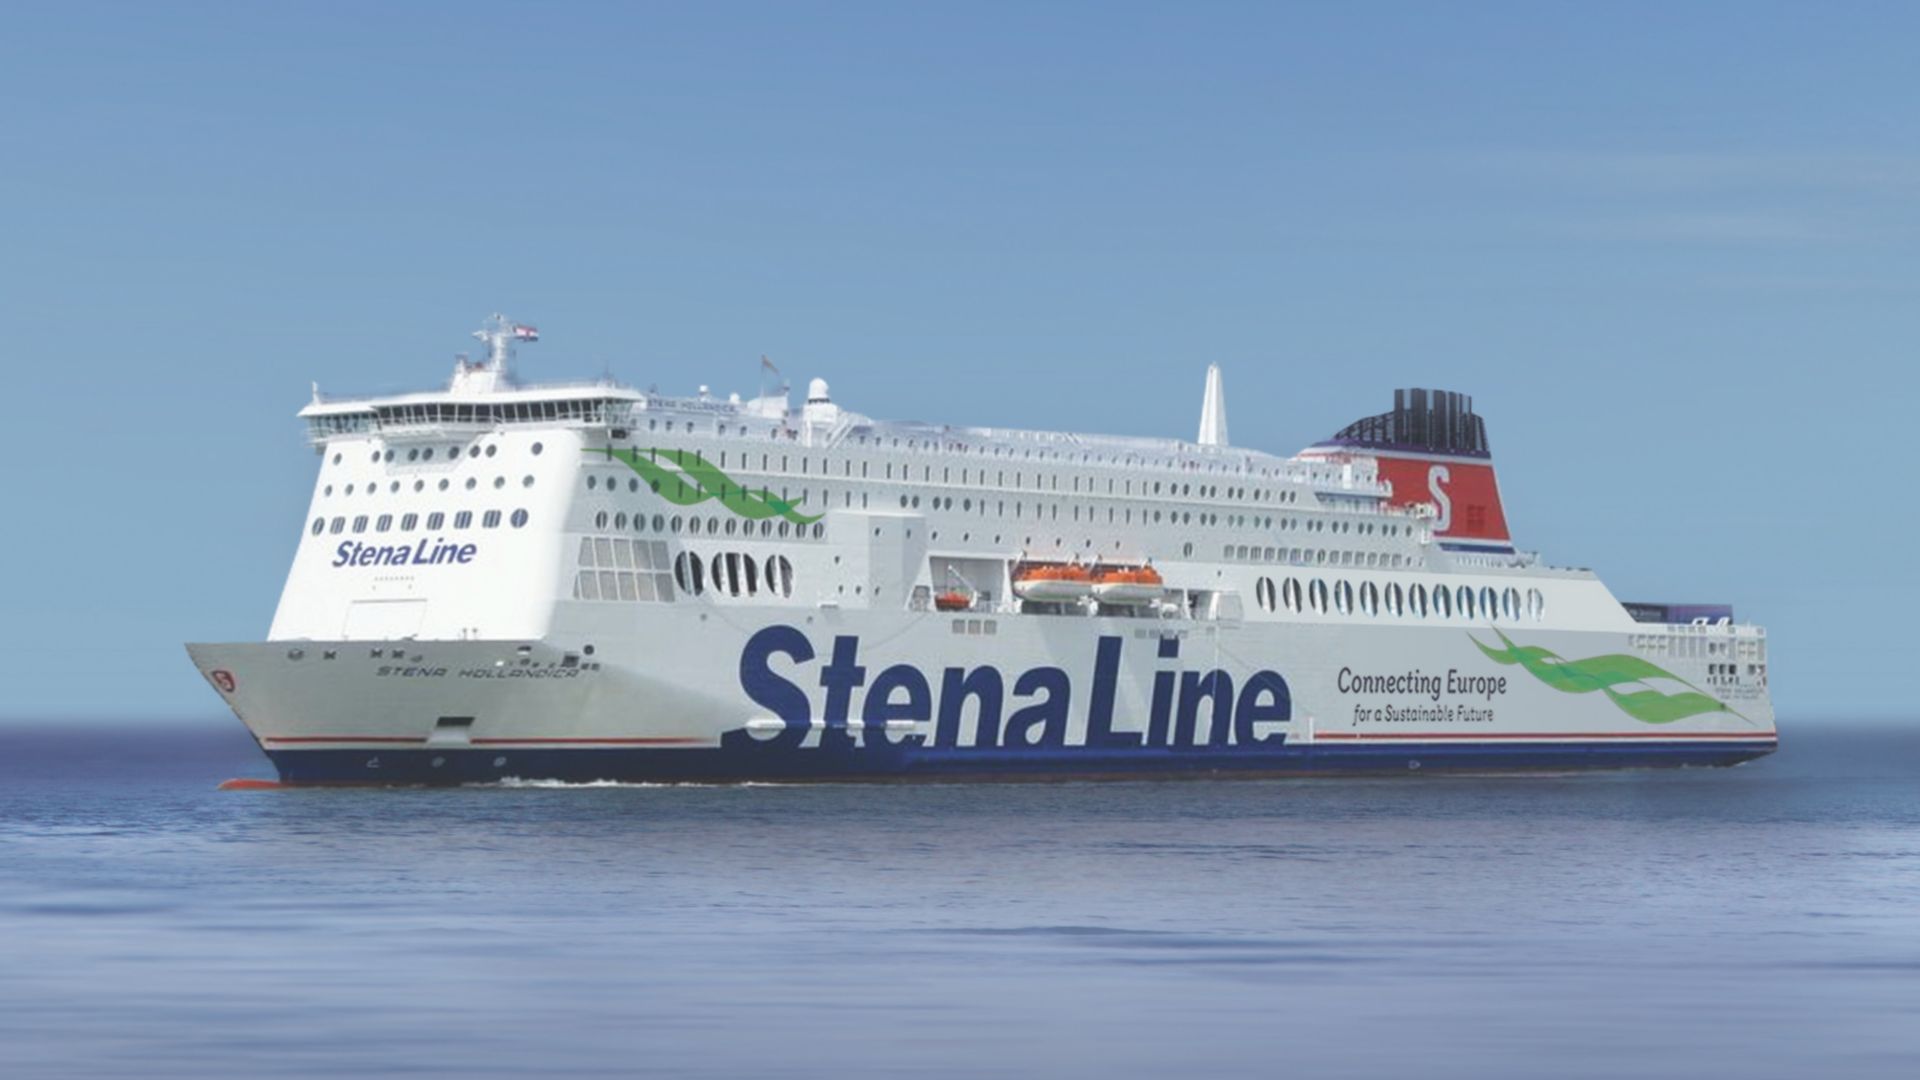 Stena Hollandica ferry at sea                 